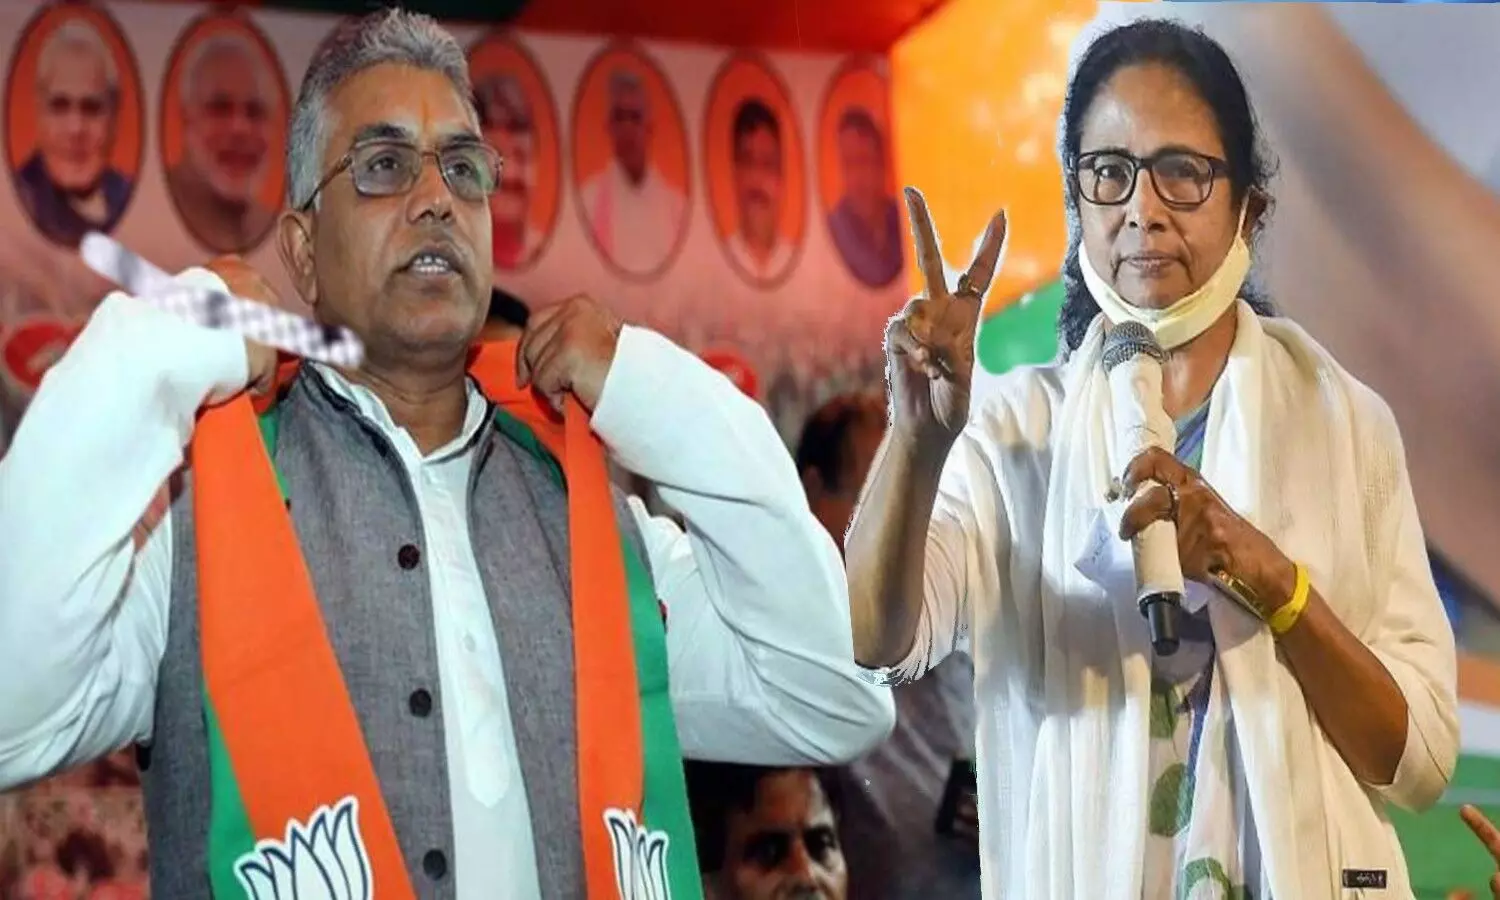 Bengal Politics: भाजपा के सांसद-विधायक हो रहे बागी, बंगाल में बढ़ा रहे मुसीबत, पार्टी खतरे में